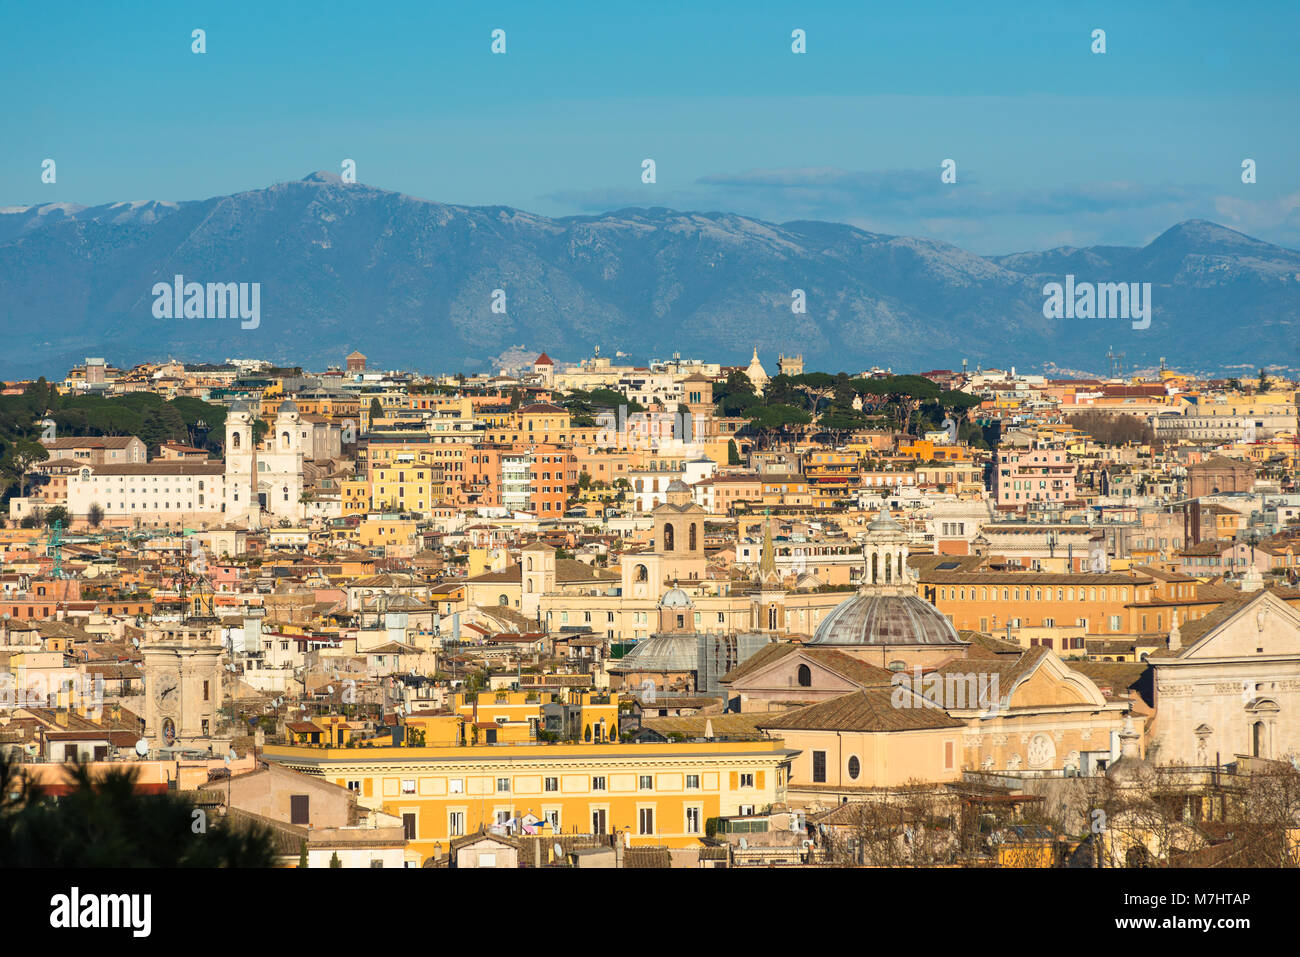 Die Altstadt von Rom City Skyline mit Kuppeln und Turmspitzen von Gianicolo-hügel Terrasse aus gesehen. Rom, Latium, Italien. Stockfoto